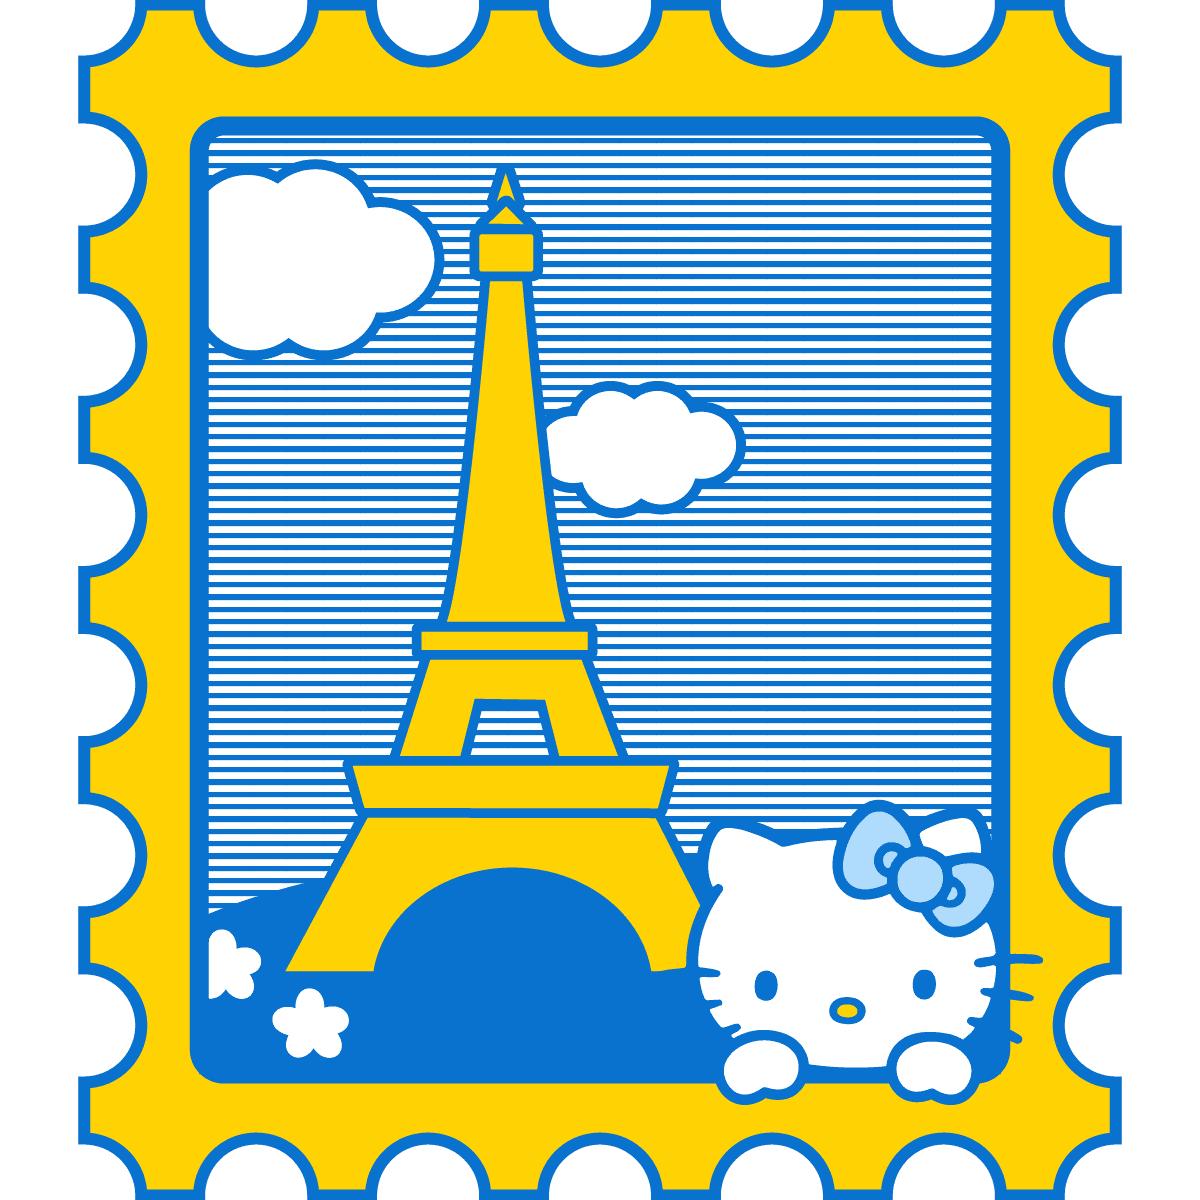 Paris Rare Stamp